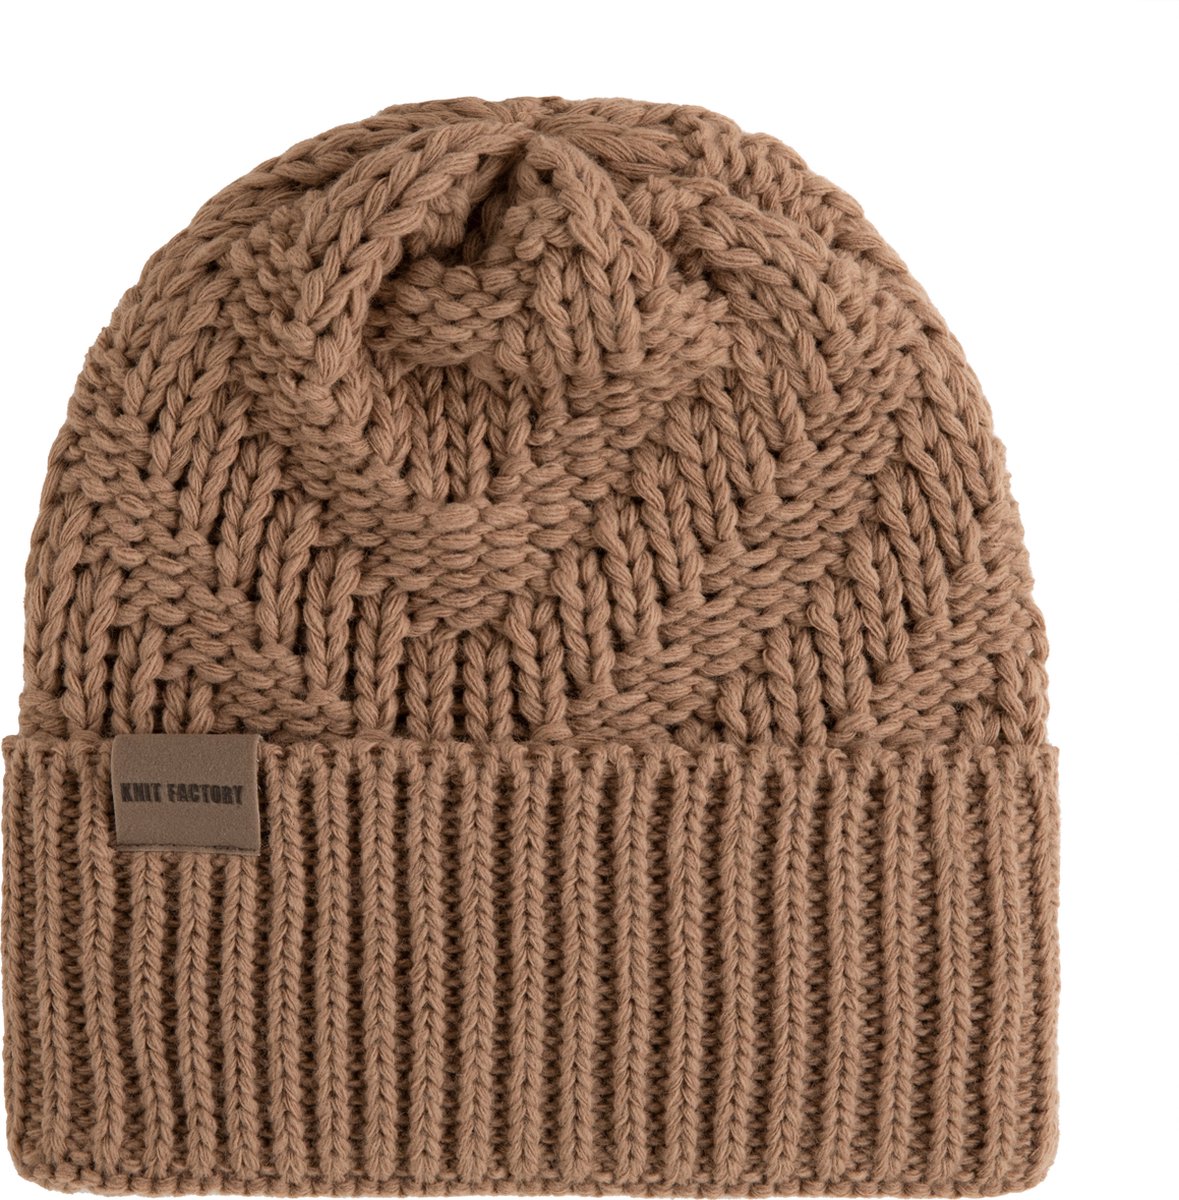 Knit Factory Sally Gebreide Muts Heren & Dames - Beanie hat - Nude - Grofgebreid - Warme bruine Wintermuts - Unisex - One Size